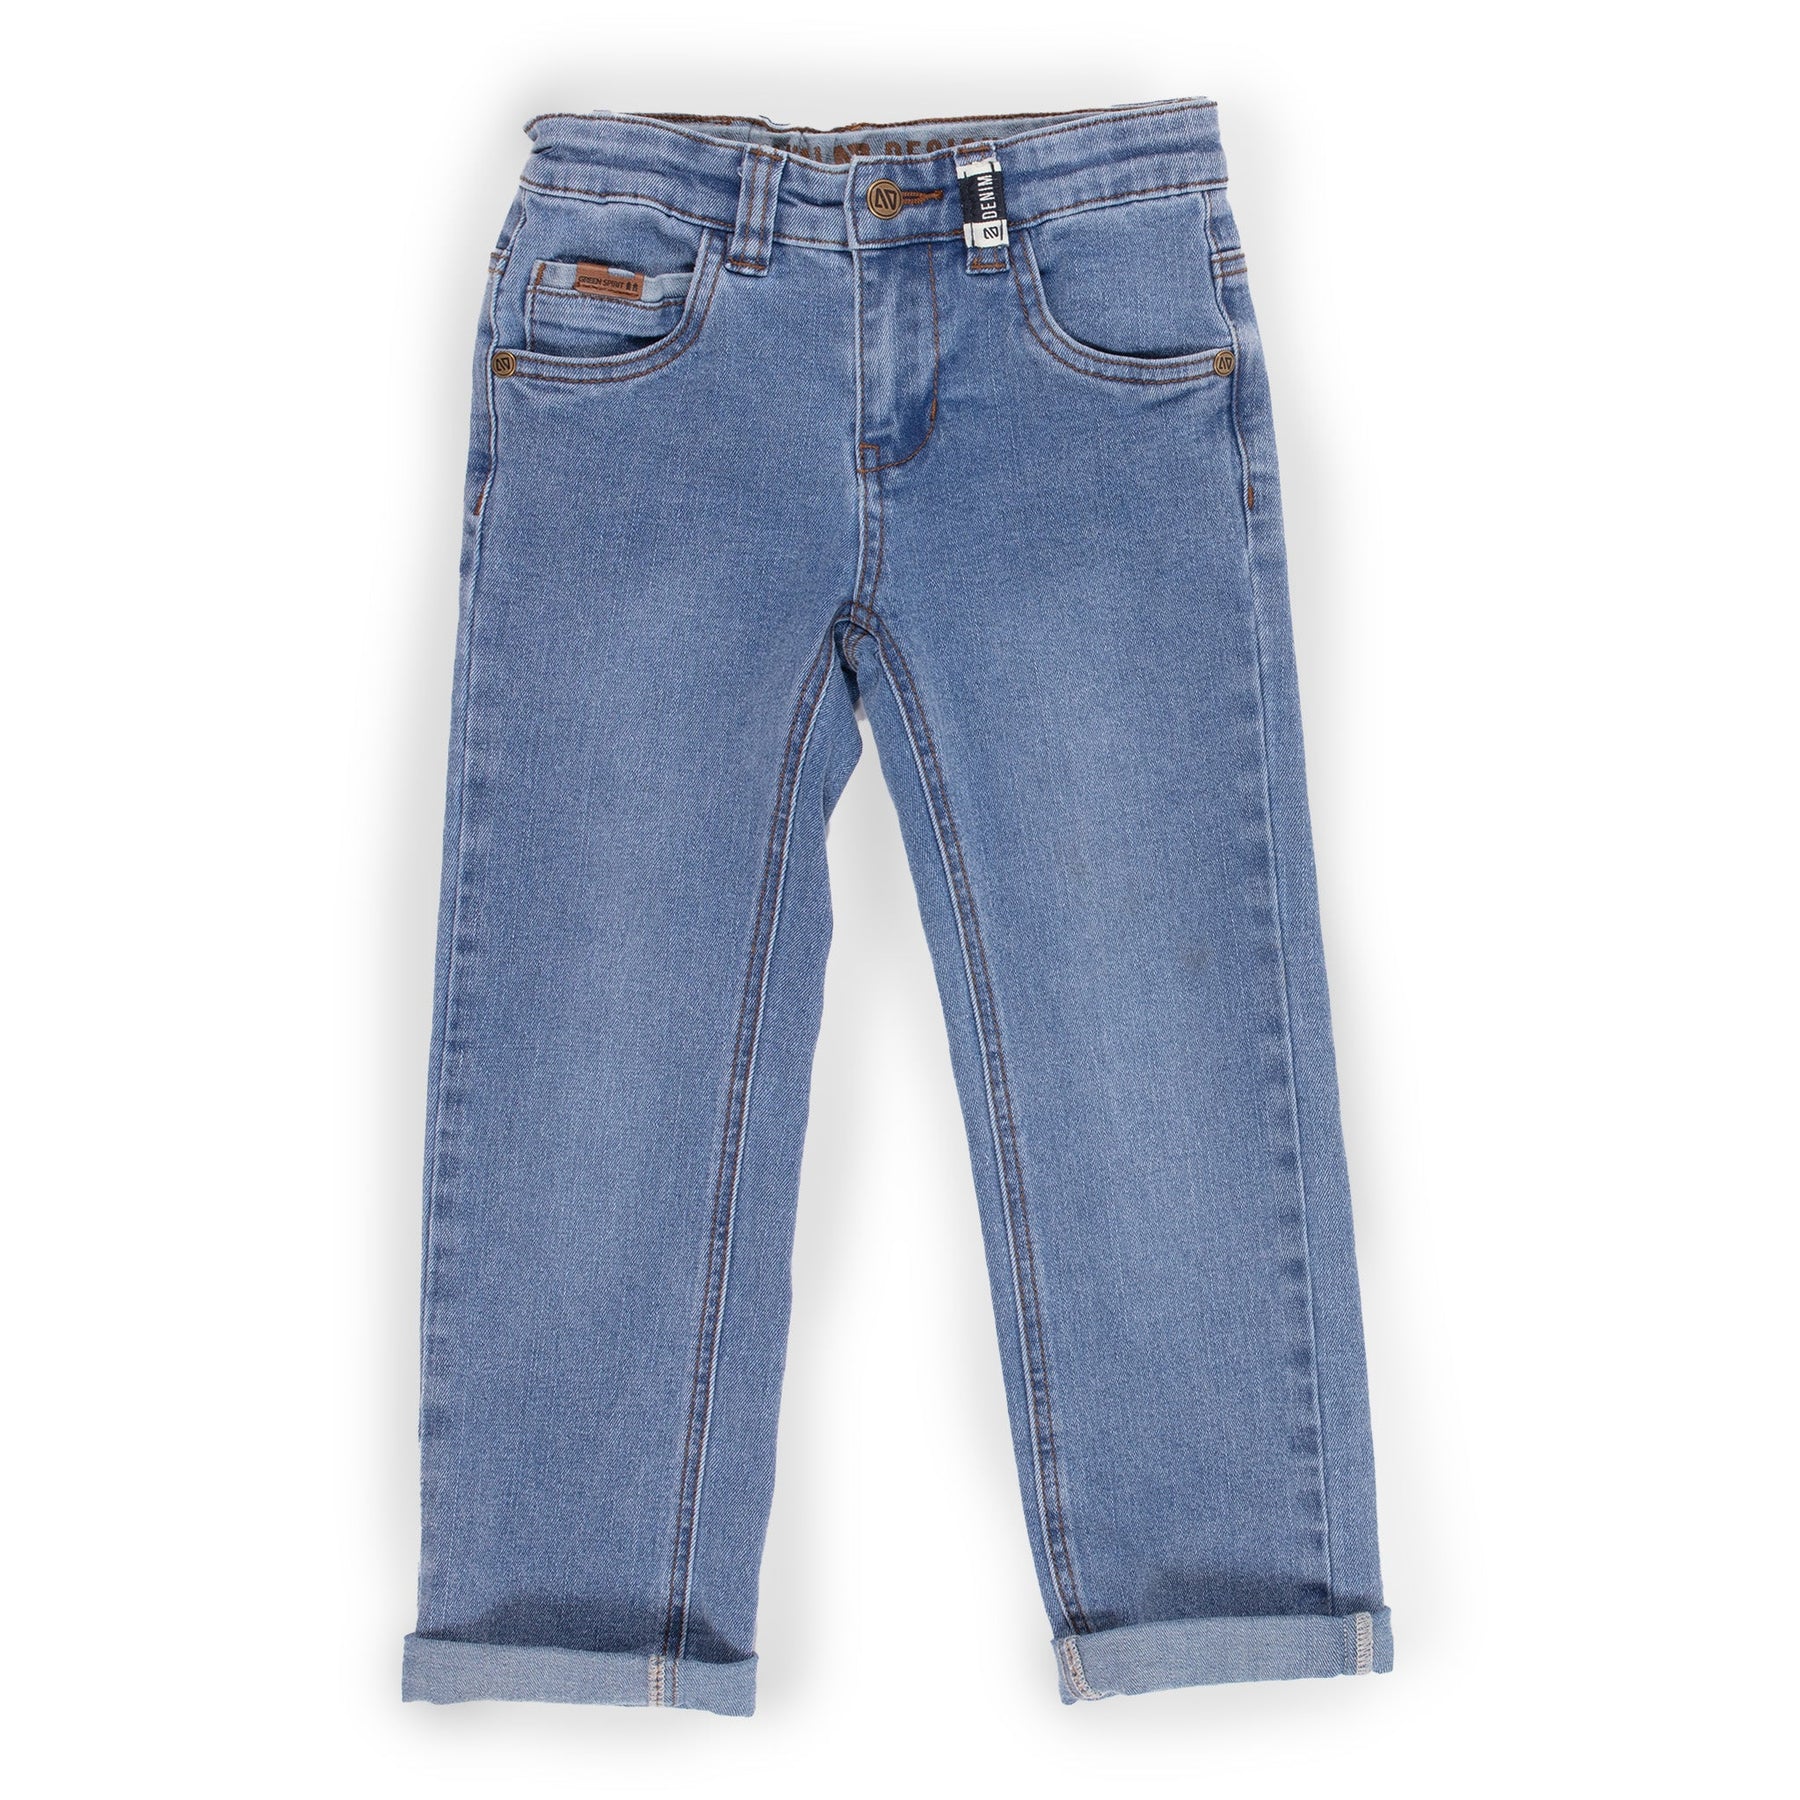 Jeans pour enfant garçon par Nano | S2301-08 Denim bleu pâle | Boutique Flos, vêtements mode pour bébés et enfants